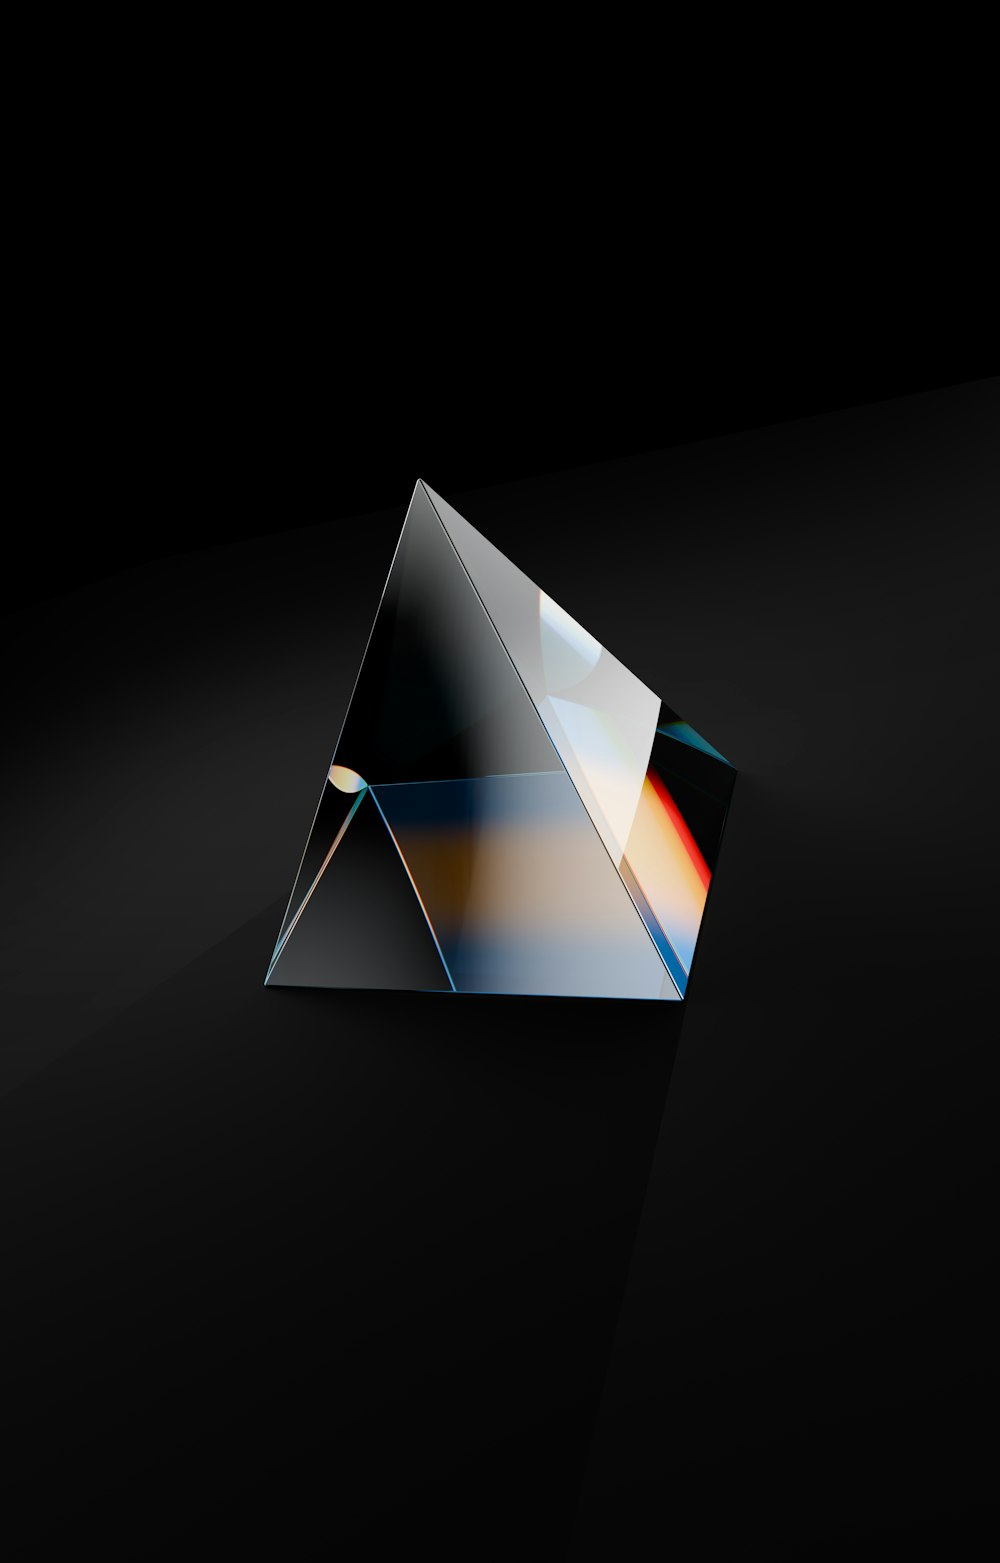 un fond noir avec un objet en forme de triangle